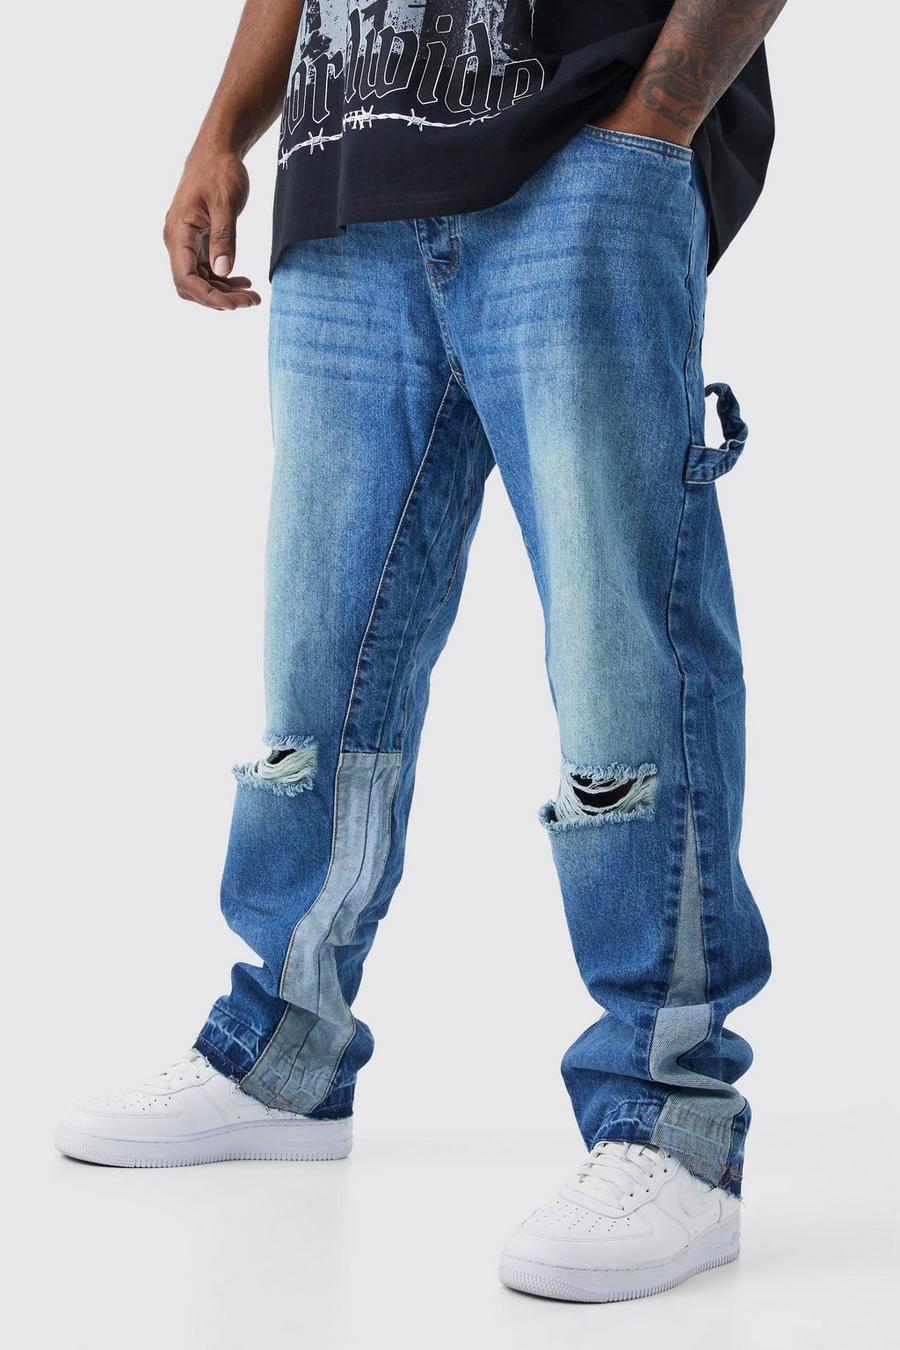 Jeans dritti Plus Size in denim rigido stile Carpenter, Vintage blue azzurro